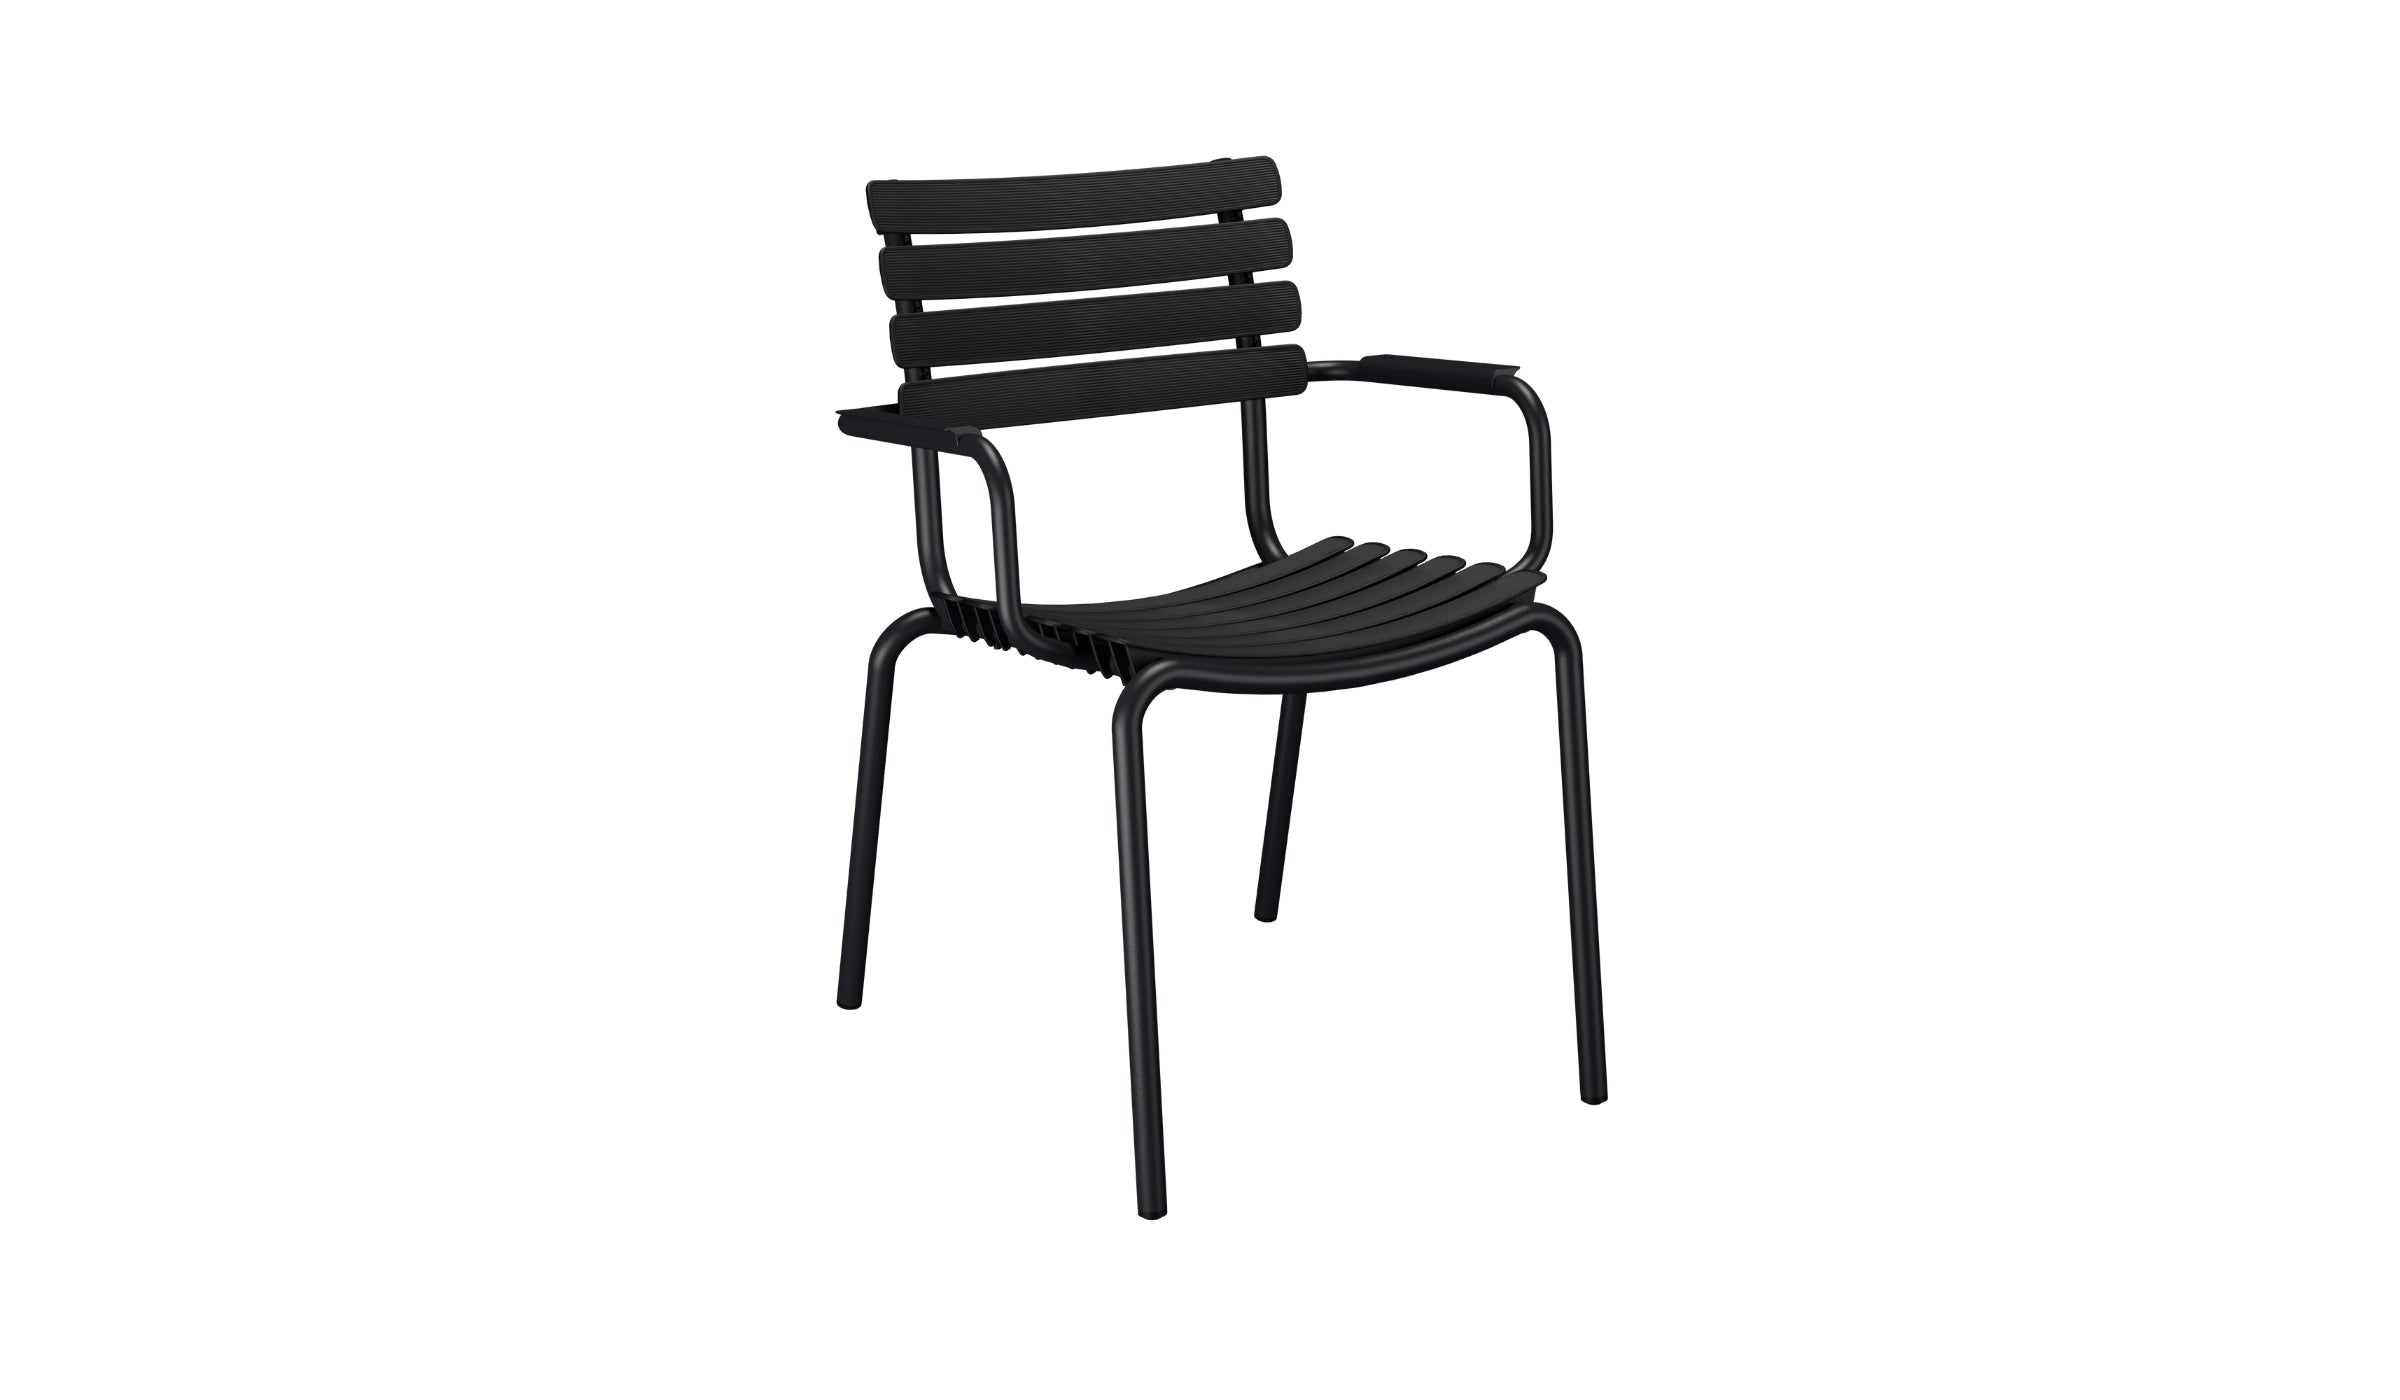 Reclips - Chaise d'extérieur en aluminium et plastique recyclé avec accoudoirs, noir